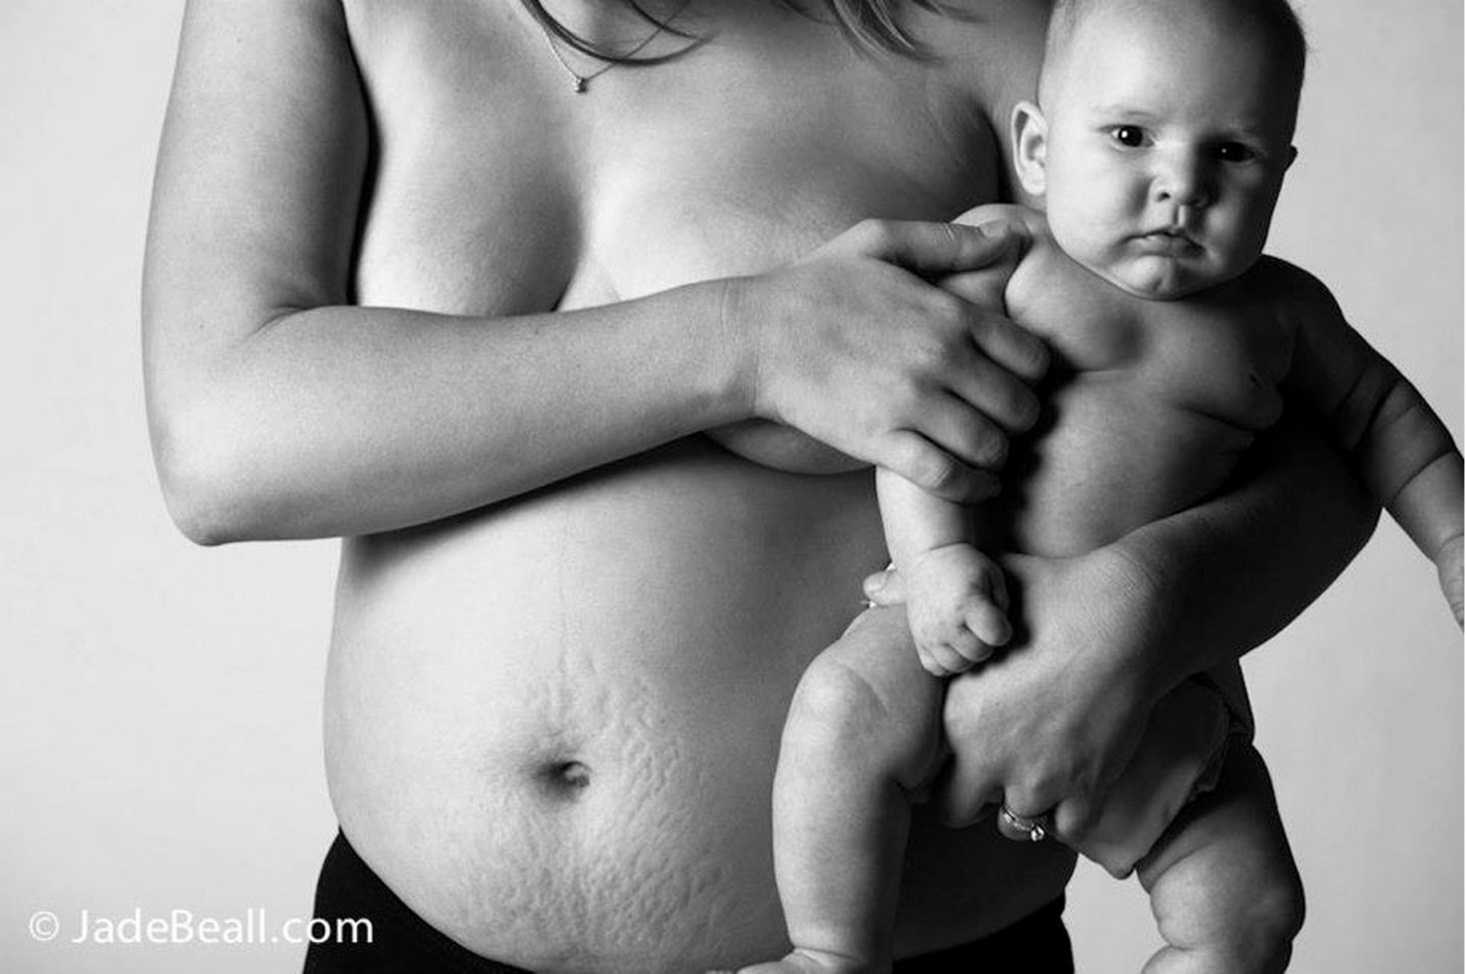 Естественные роды фото: 20 сильных фотографий родов, которые никого не оставят равнодушным – очень подробные фотографии процесса родов в роддоме